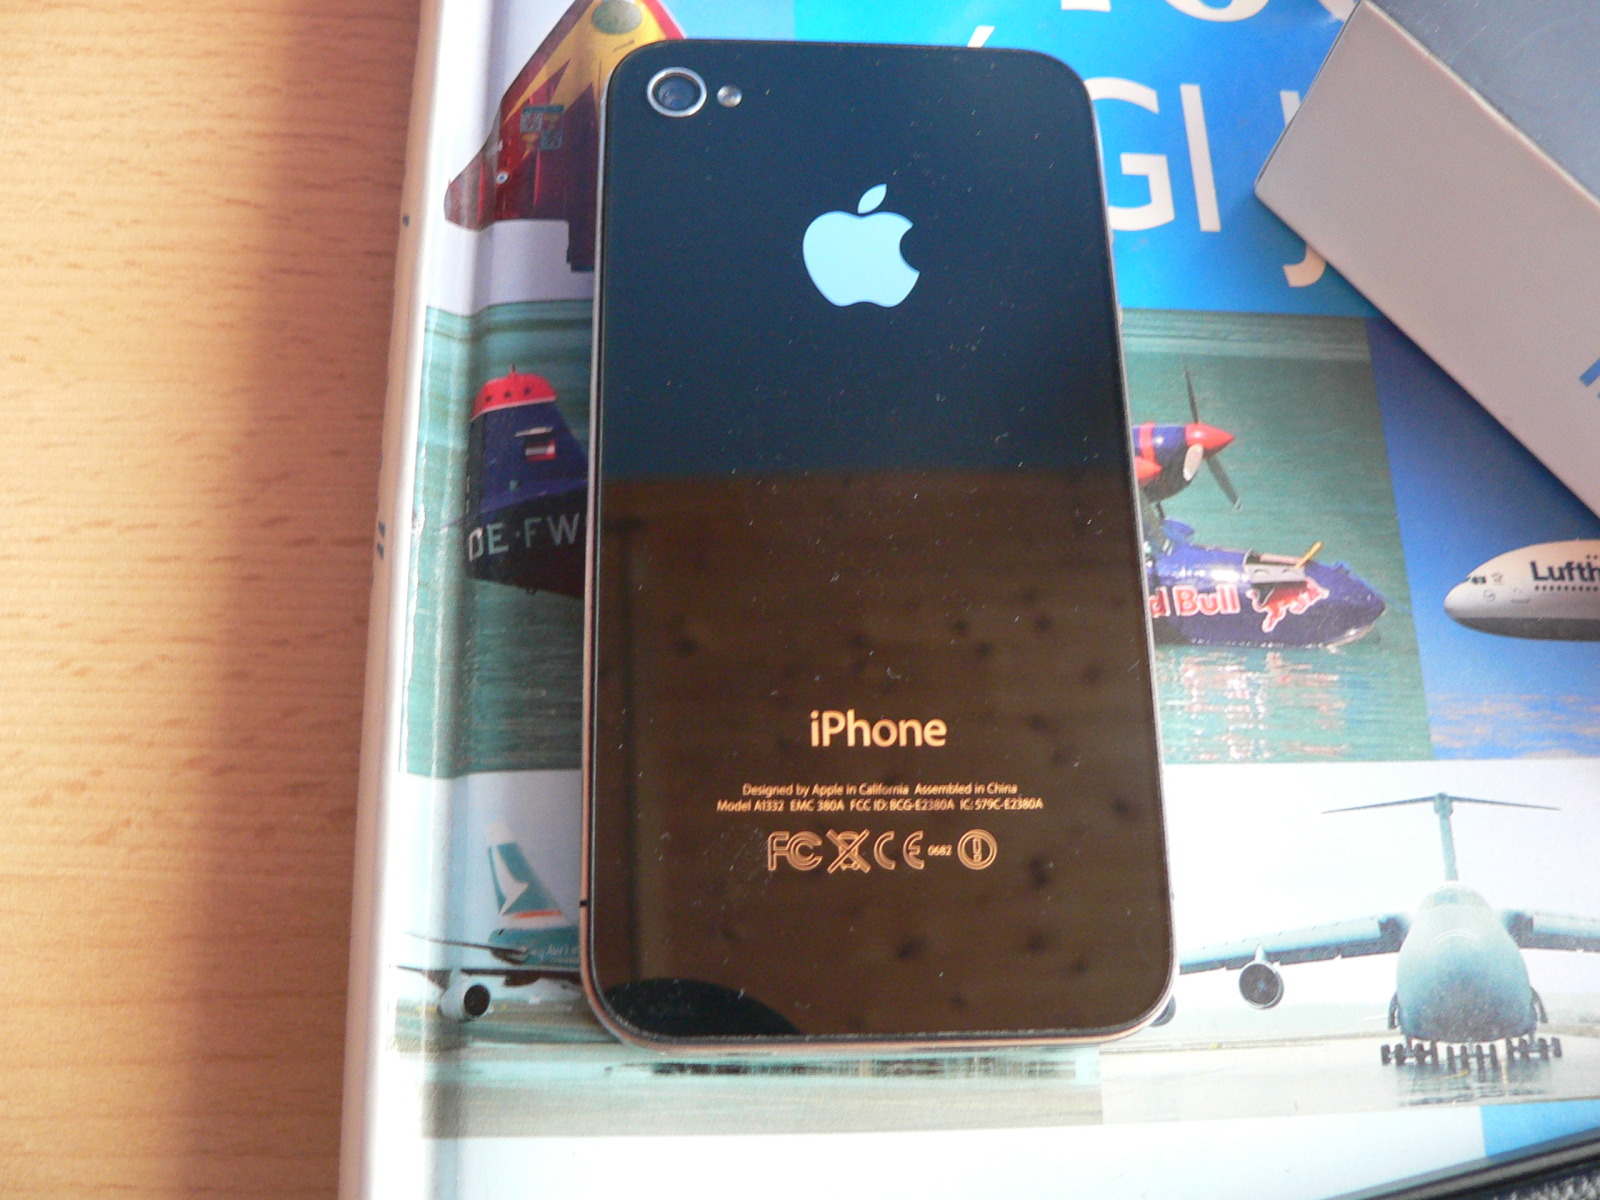 جميع تطبيقات والعاب الايفون  iPhone Games And Appz Collection  2010 بحجمــ 1 جيجا . تحميل مباشر " علي أكثر من سيرفر Demkq9